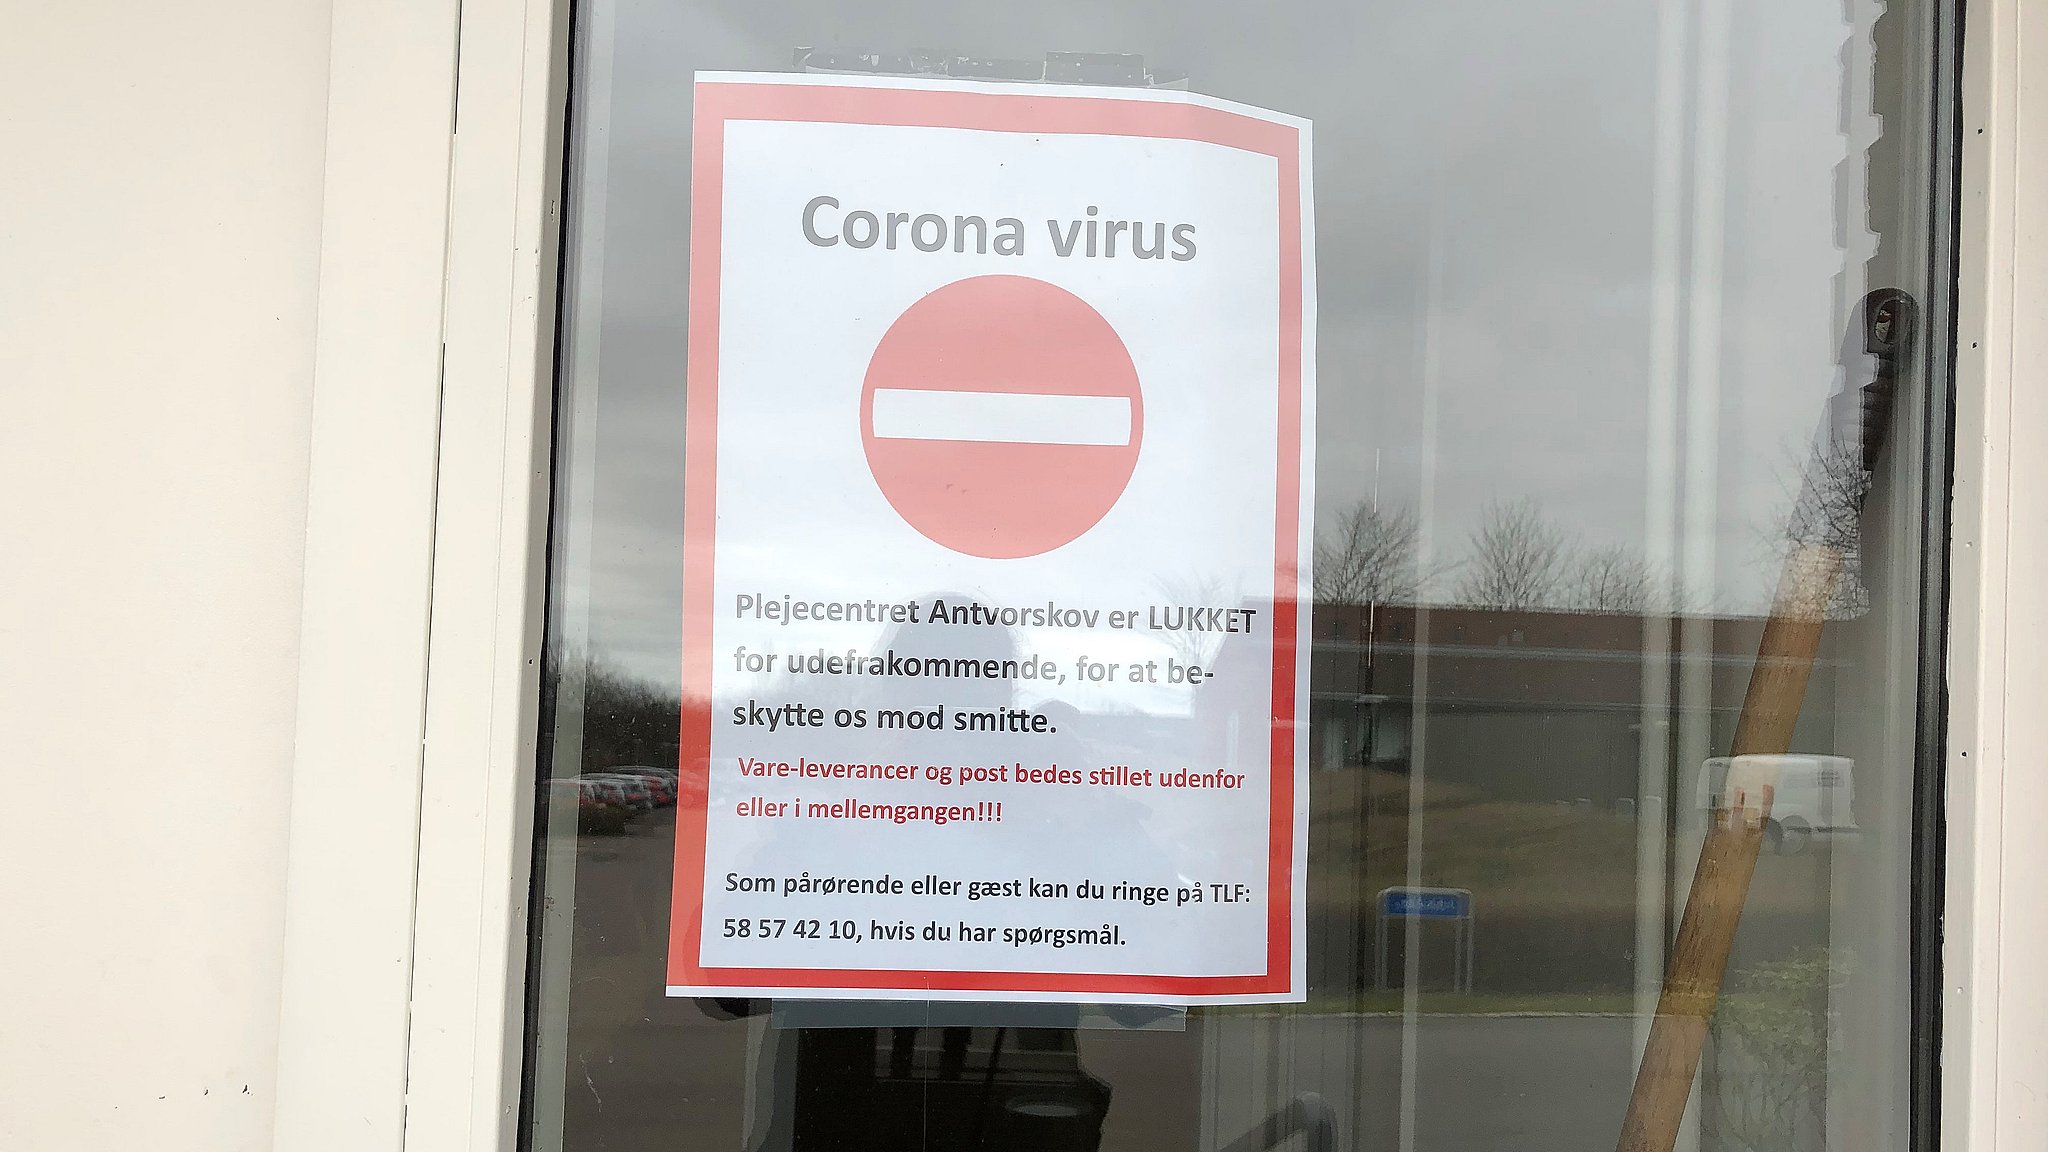 Compulsion tragedie Blive skør To beboere smittet med coronavirus på regionale plejecentre | TV2 ØST